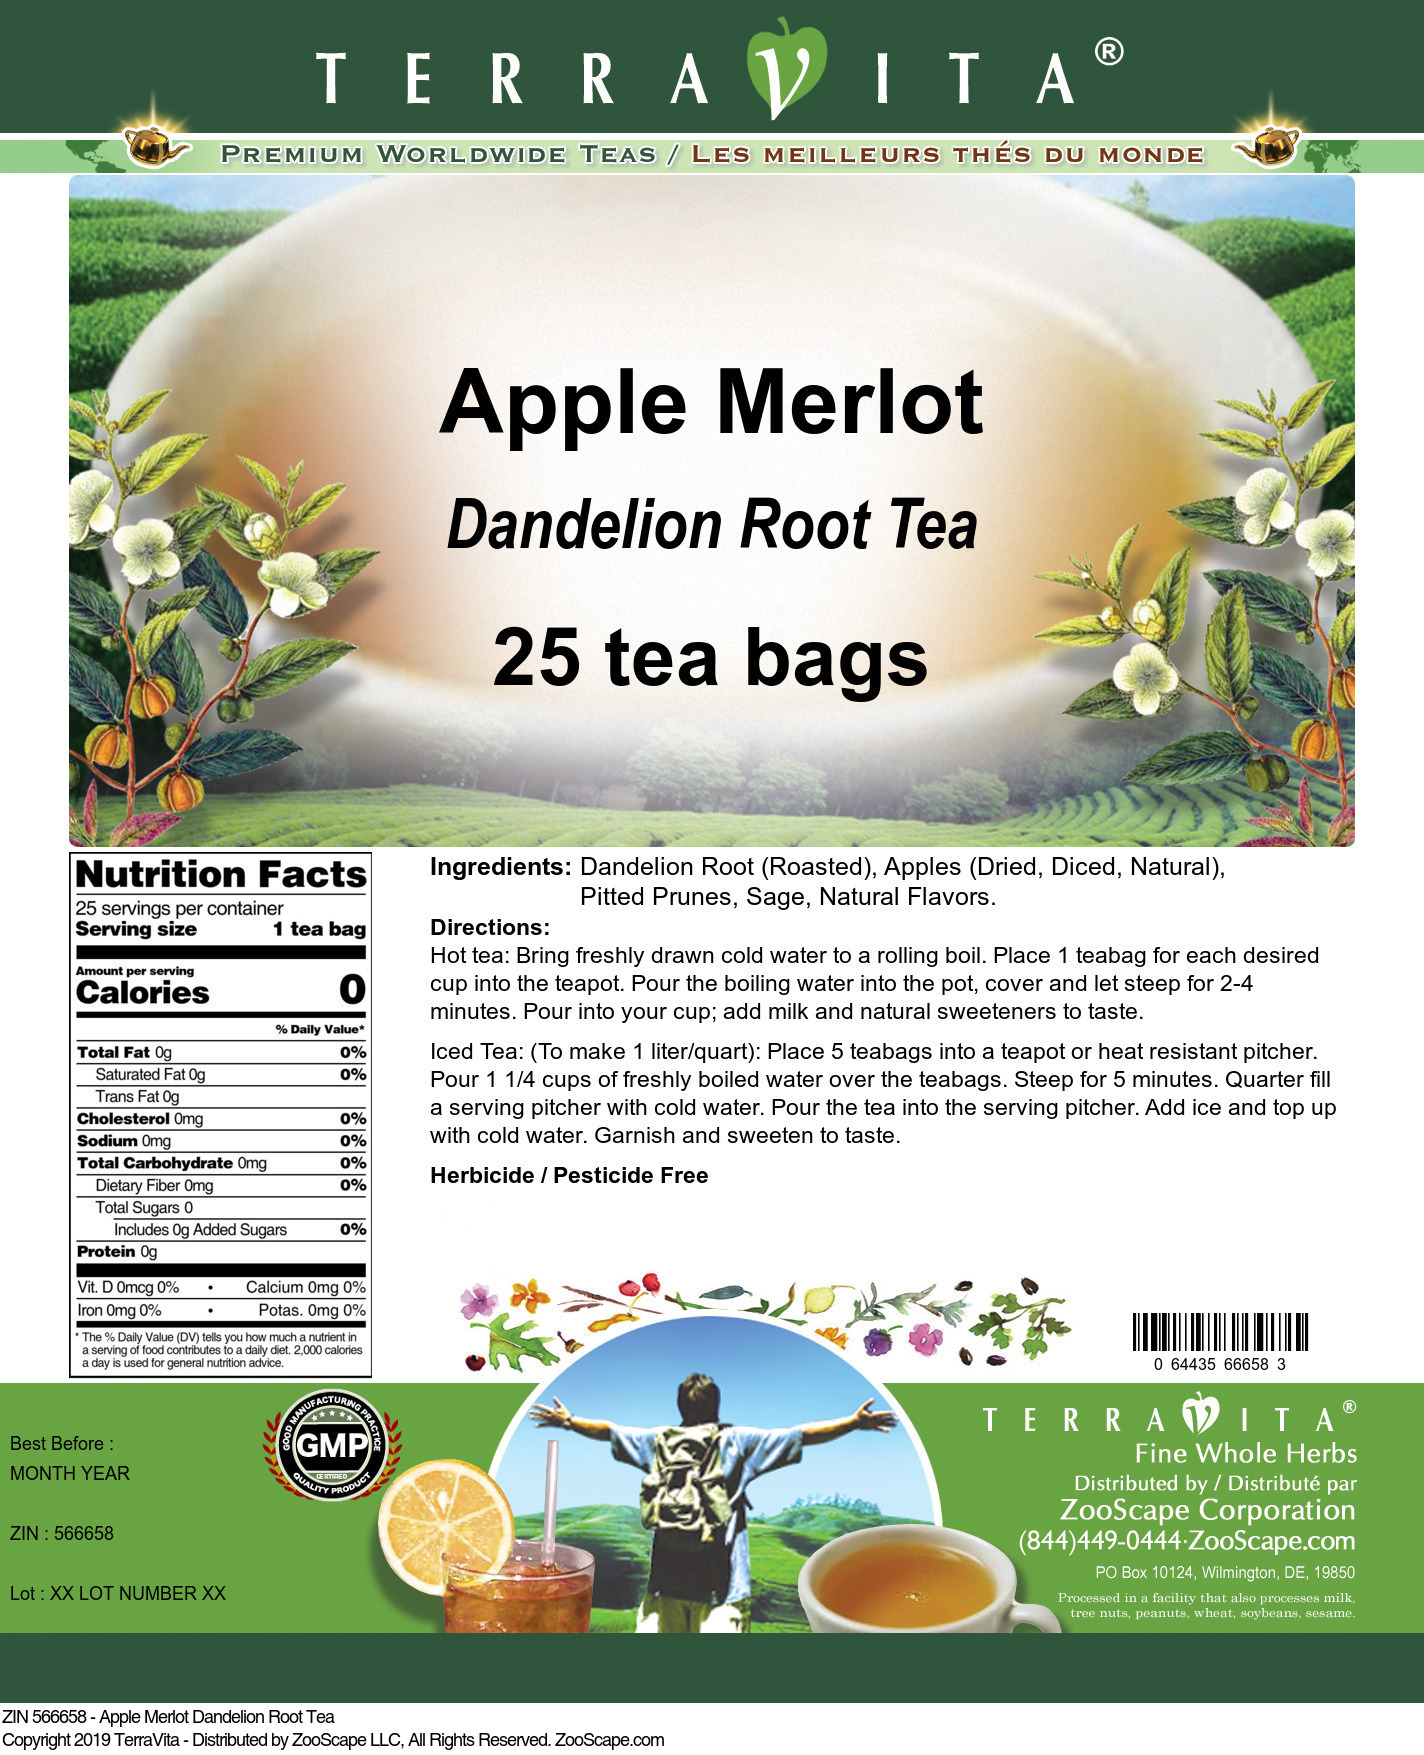 Apple Merlot Dandelion Root Tea - Label